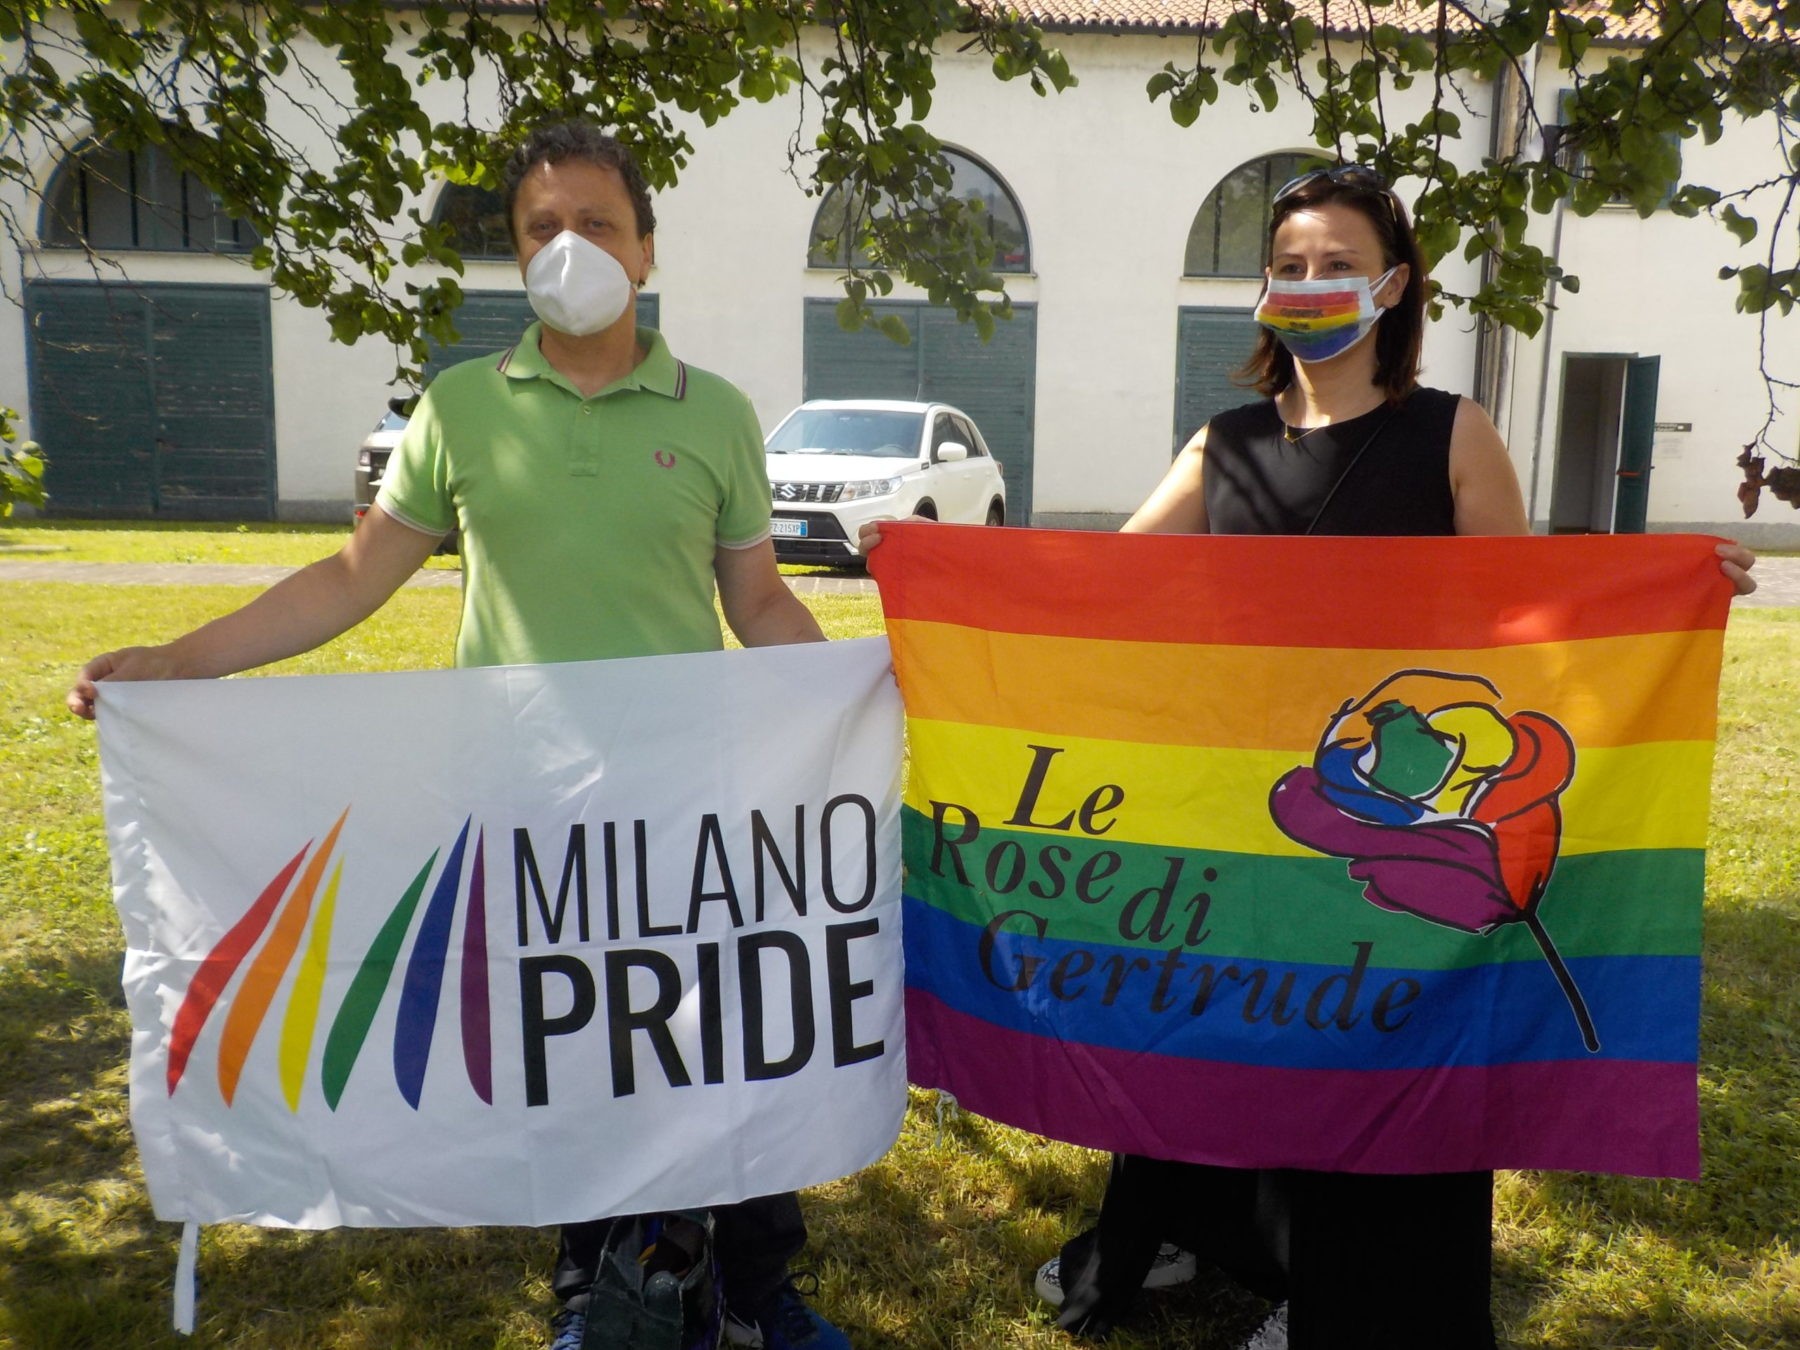 . Al via, da Corbetta, il "Milano Pride" on line con "Le rose di Gertrude" - 16/06/2020